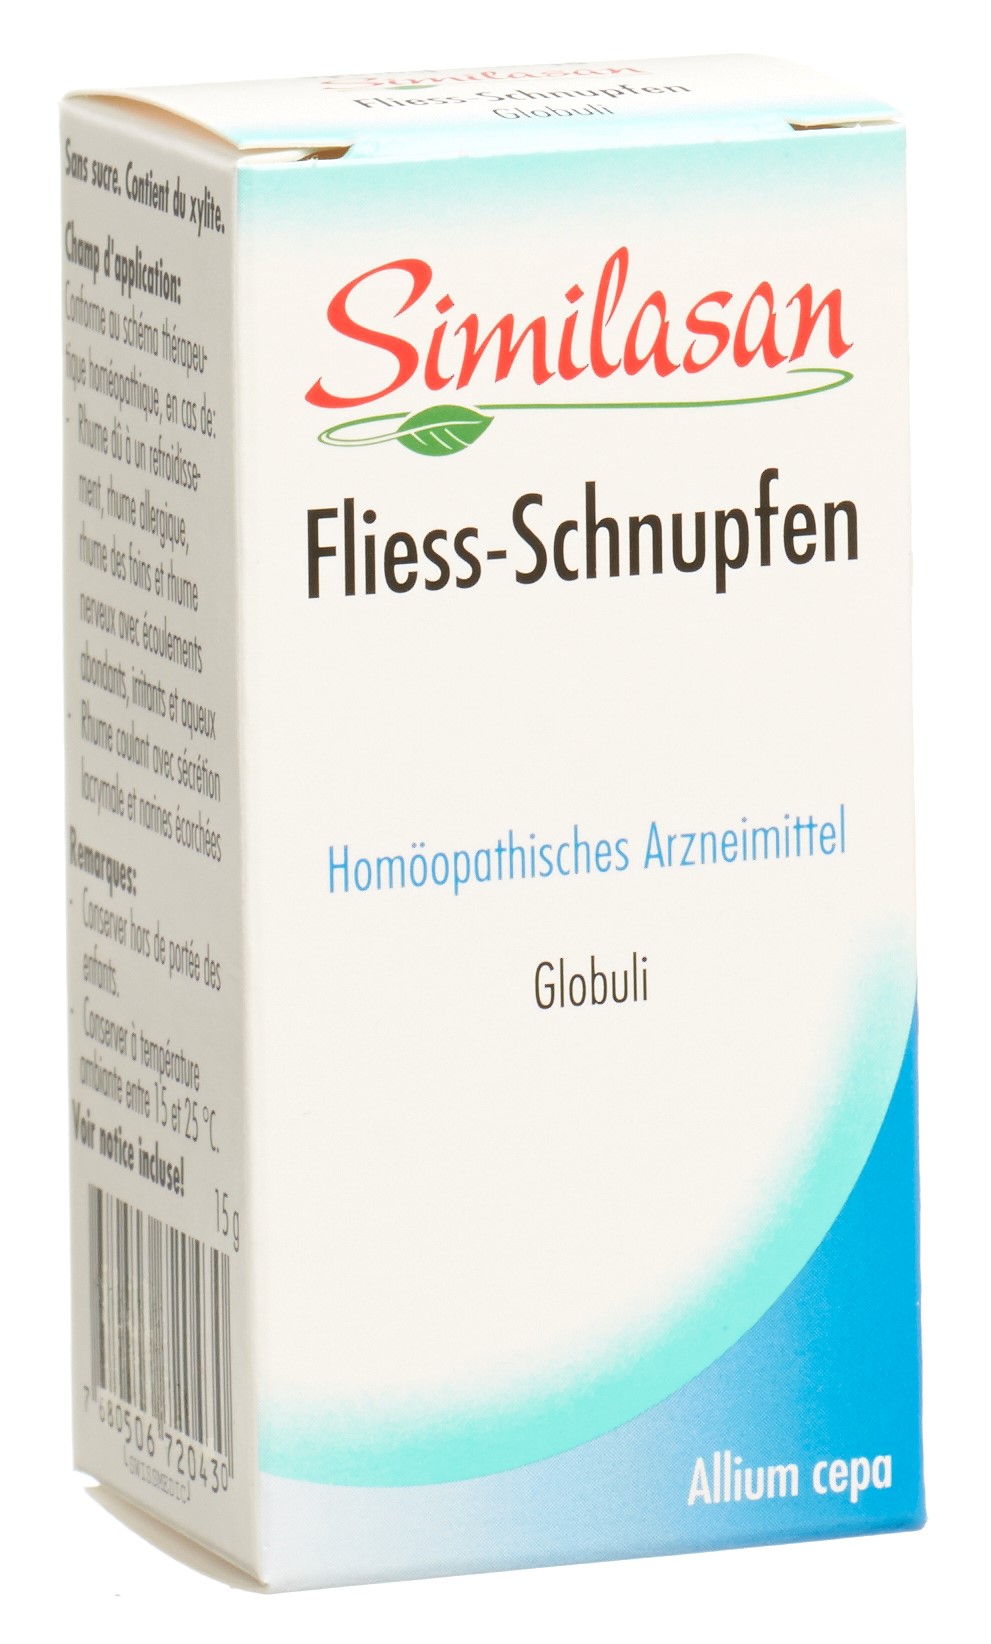 Fliess-Schnupfen